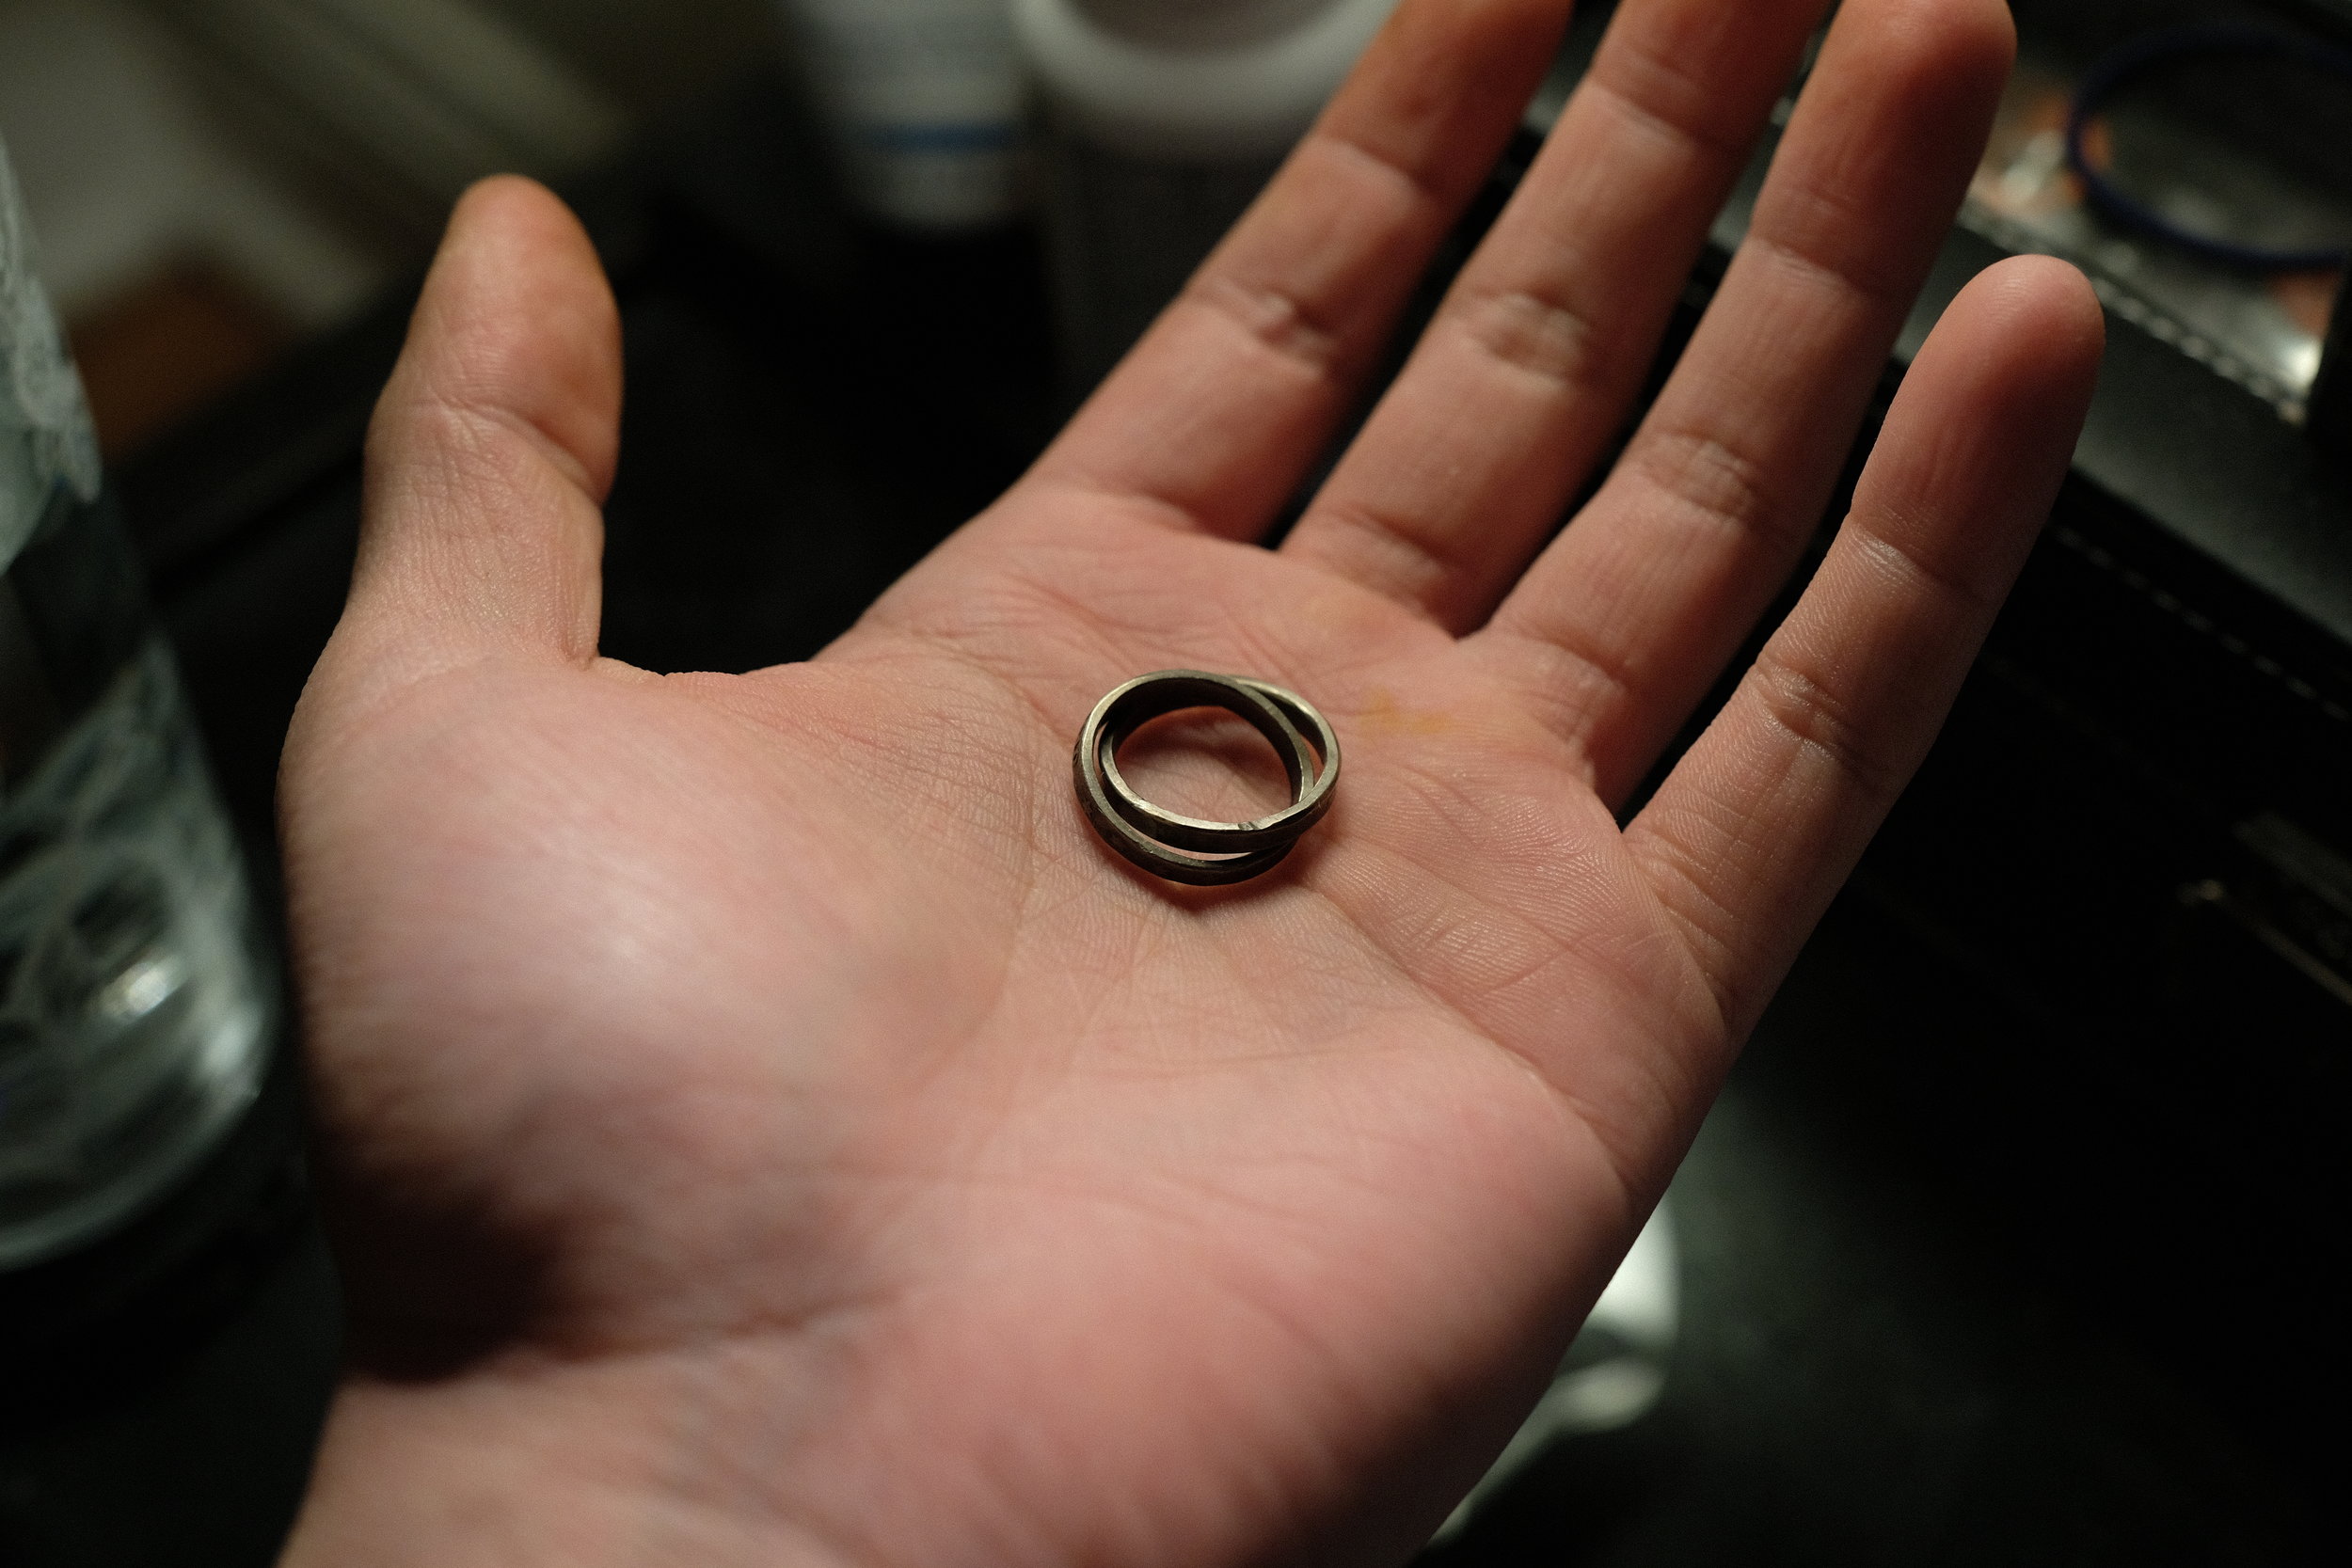  The rings (ring?)&nbsp;after their sulphur bath.&nbsp; 